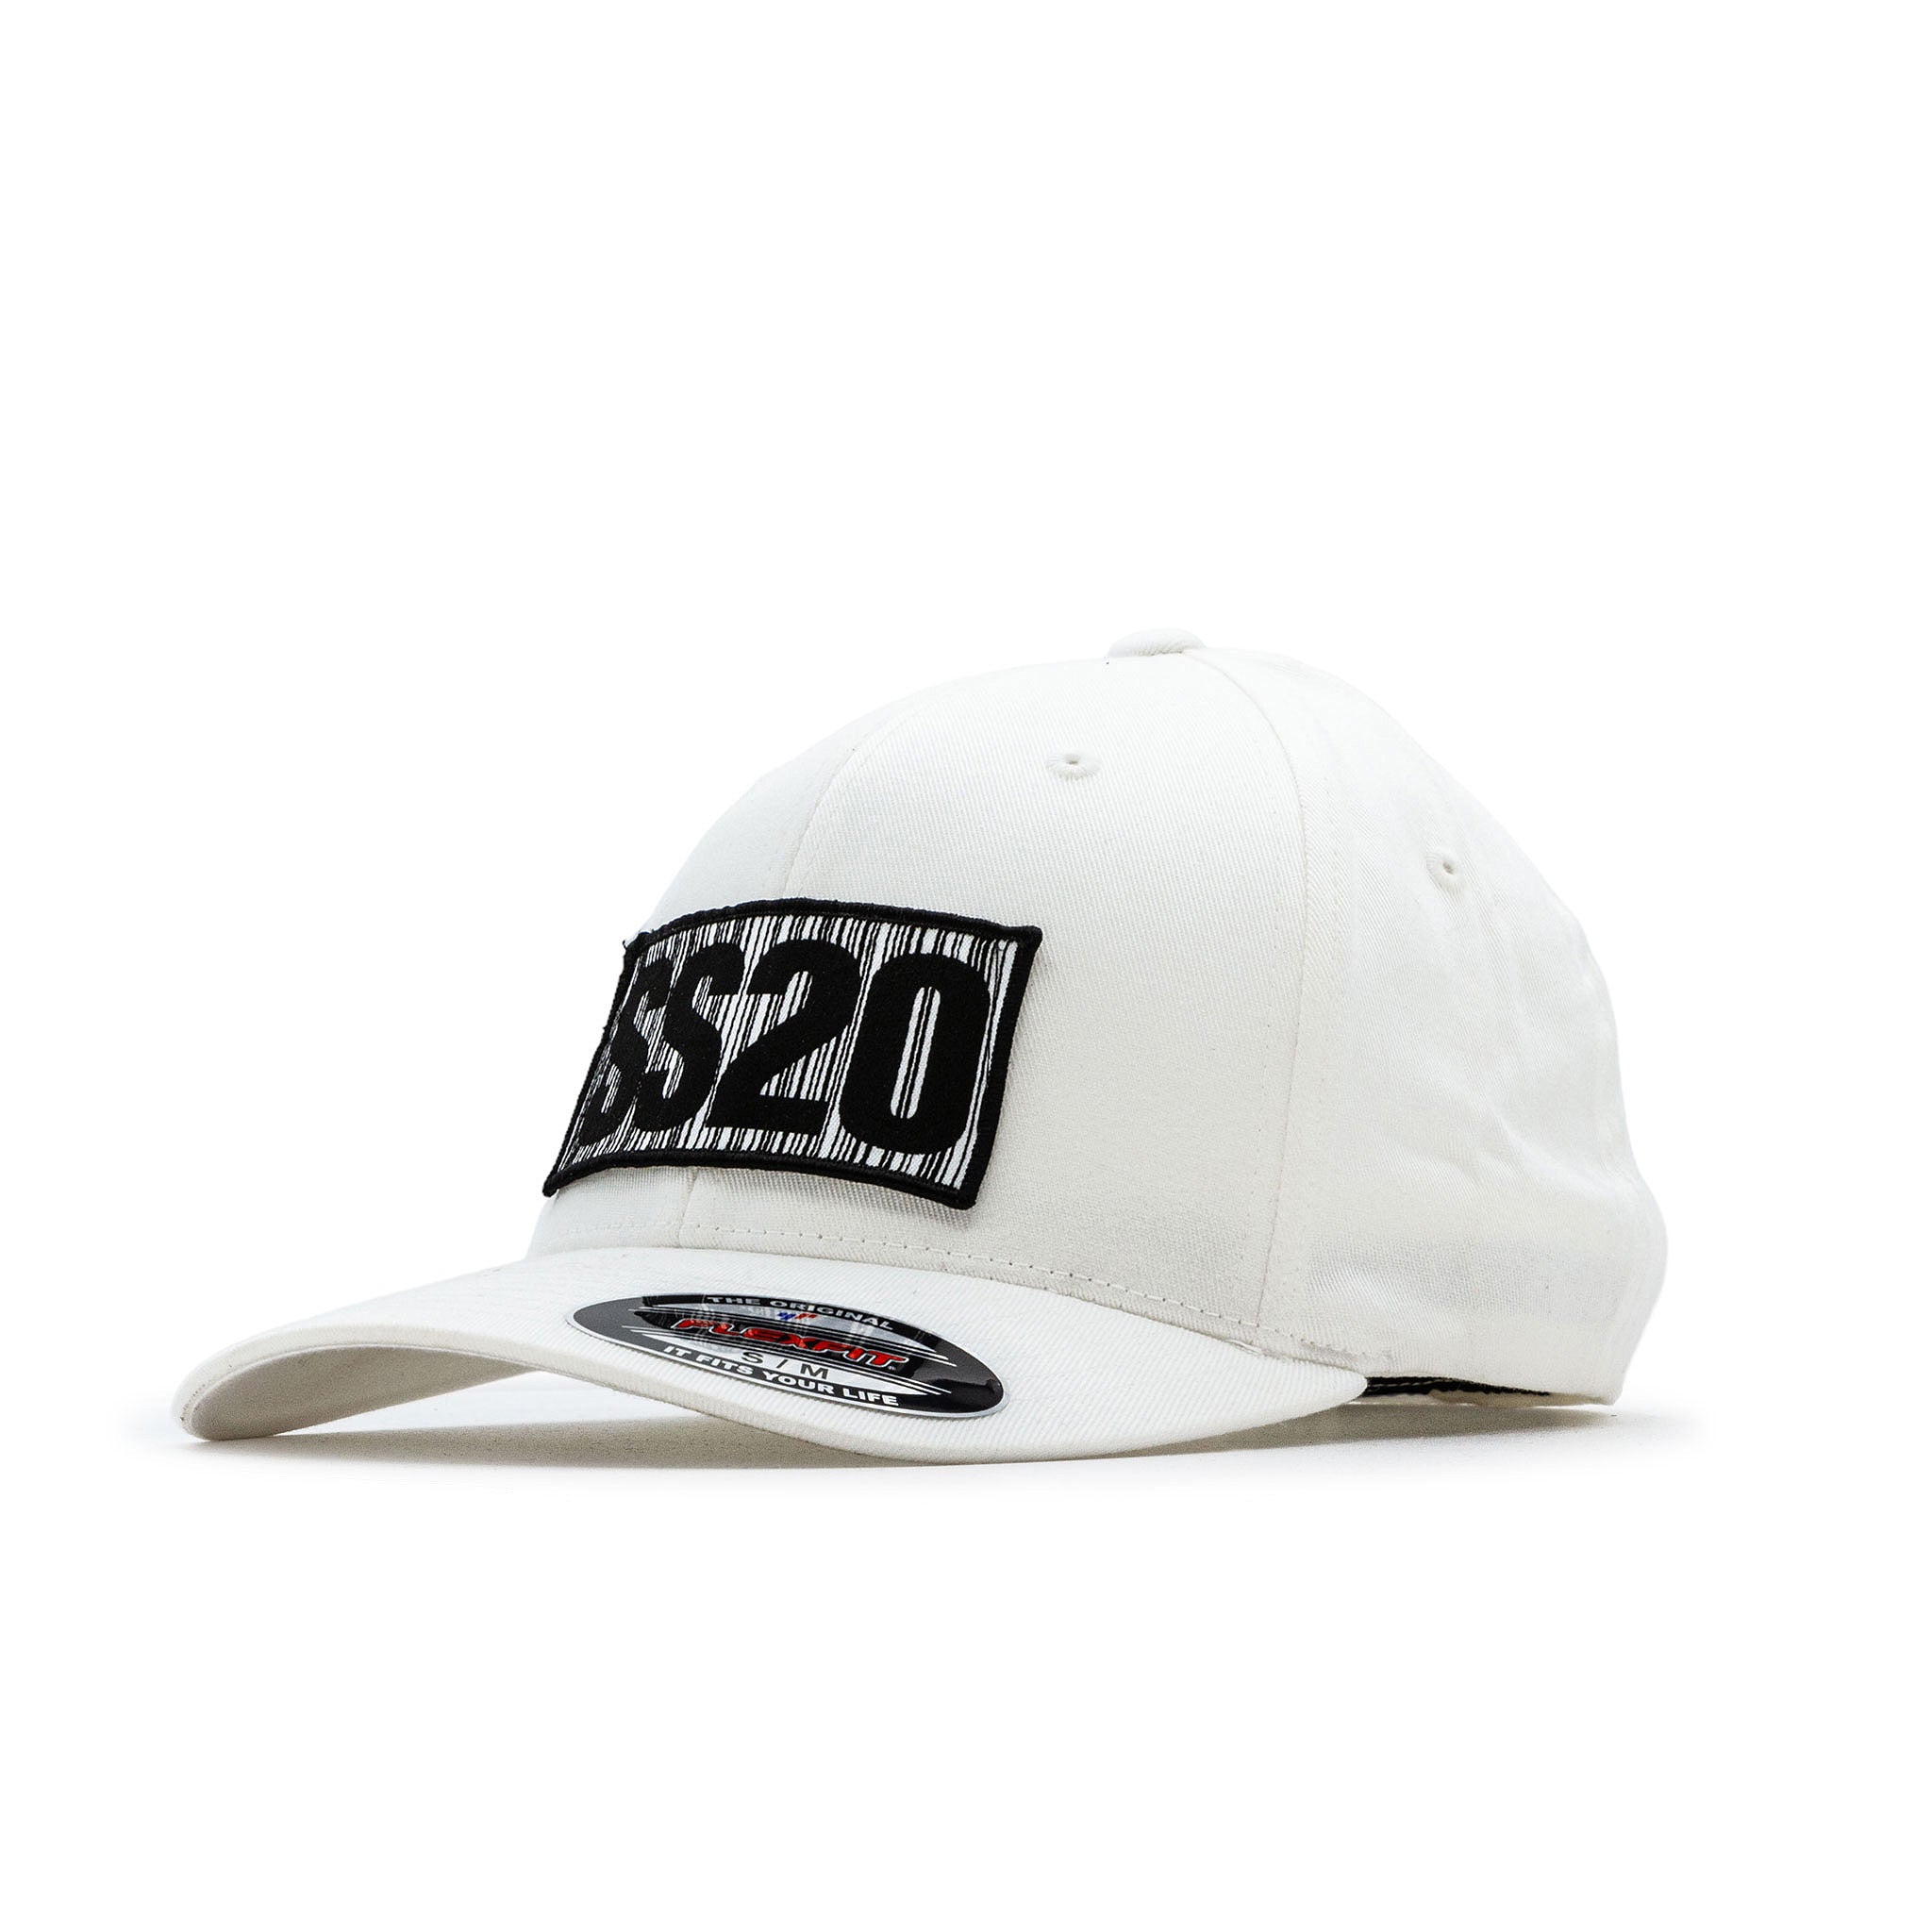 White - – SS20 Flexfit Cap weareSS20 Barcode Organic